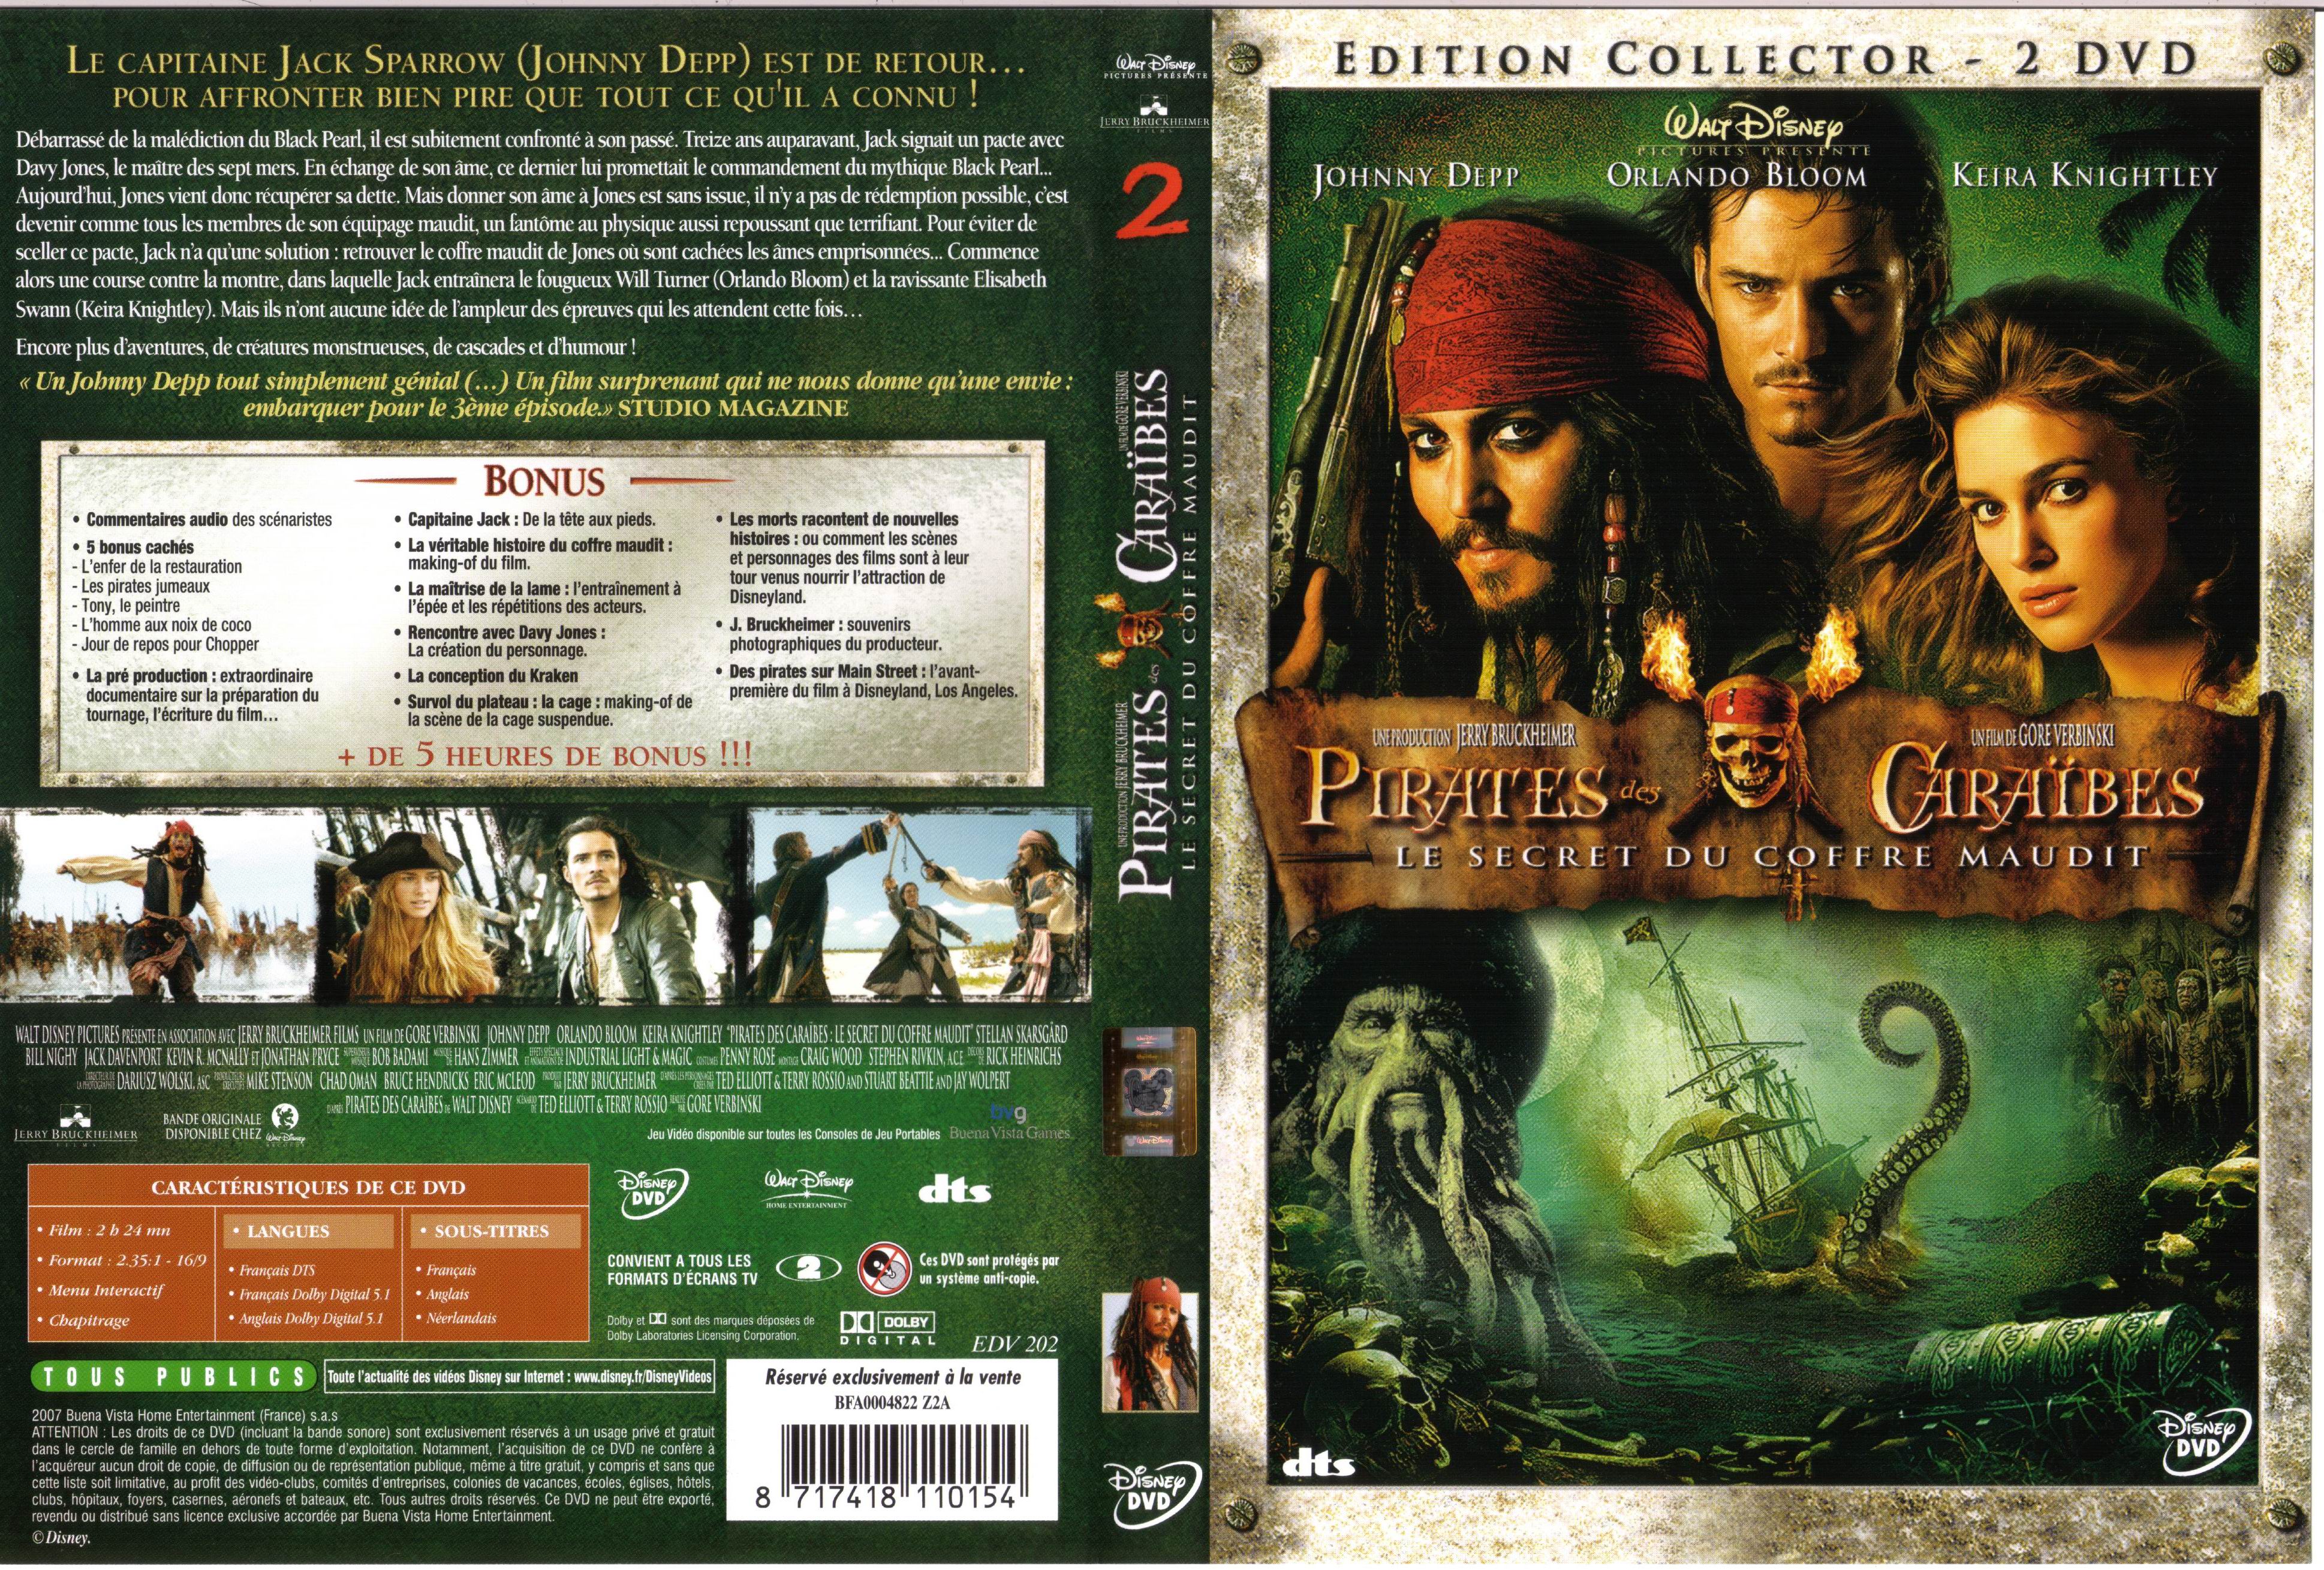 Jaquette DVD Pirates des caraibes 2 v2